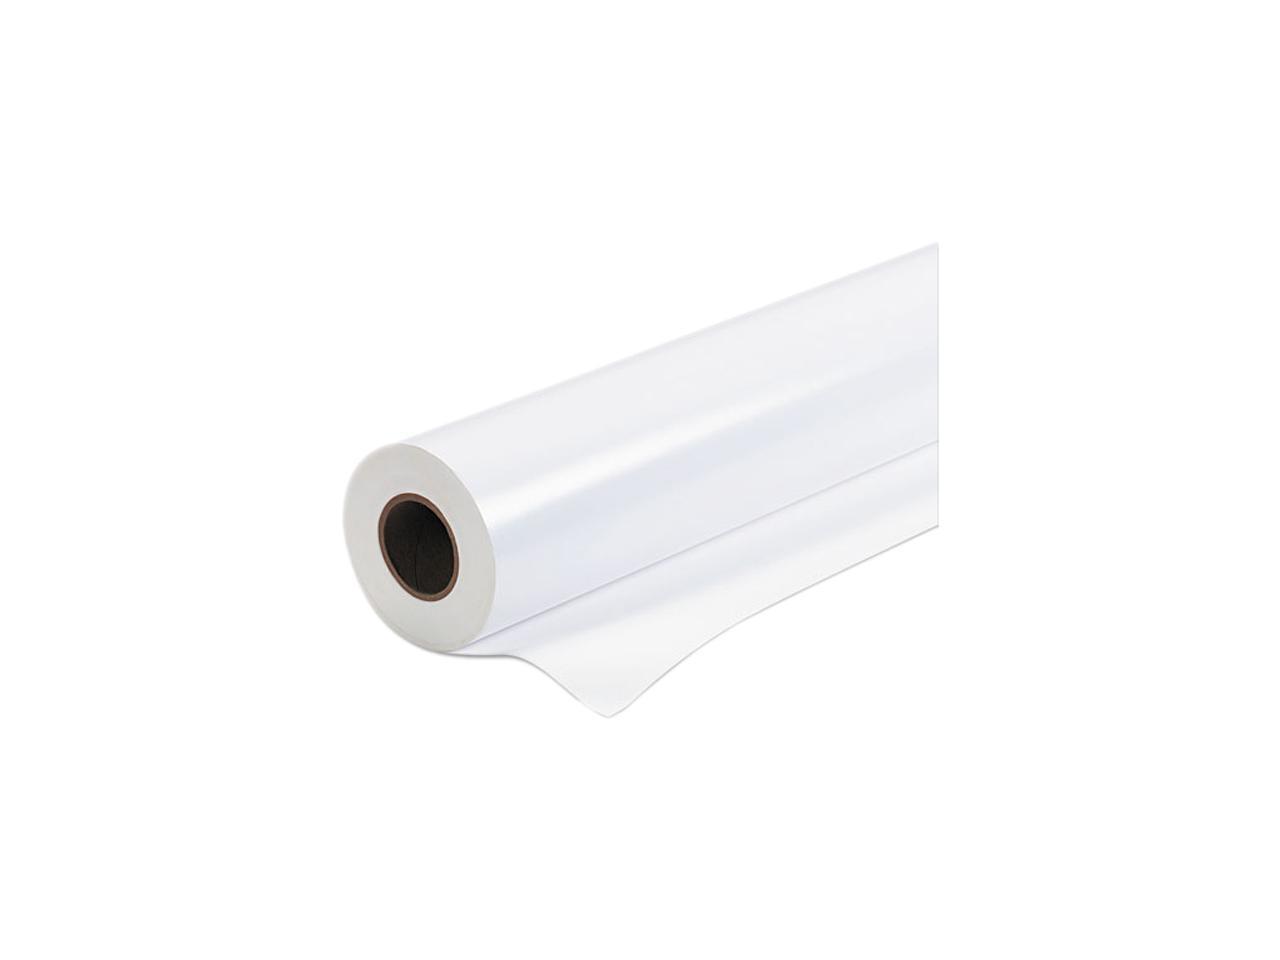 Epson S041395 Premium Semi-Gloss Photo Paper, 170 g, 44" x 100 ft, White